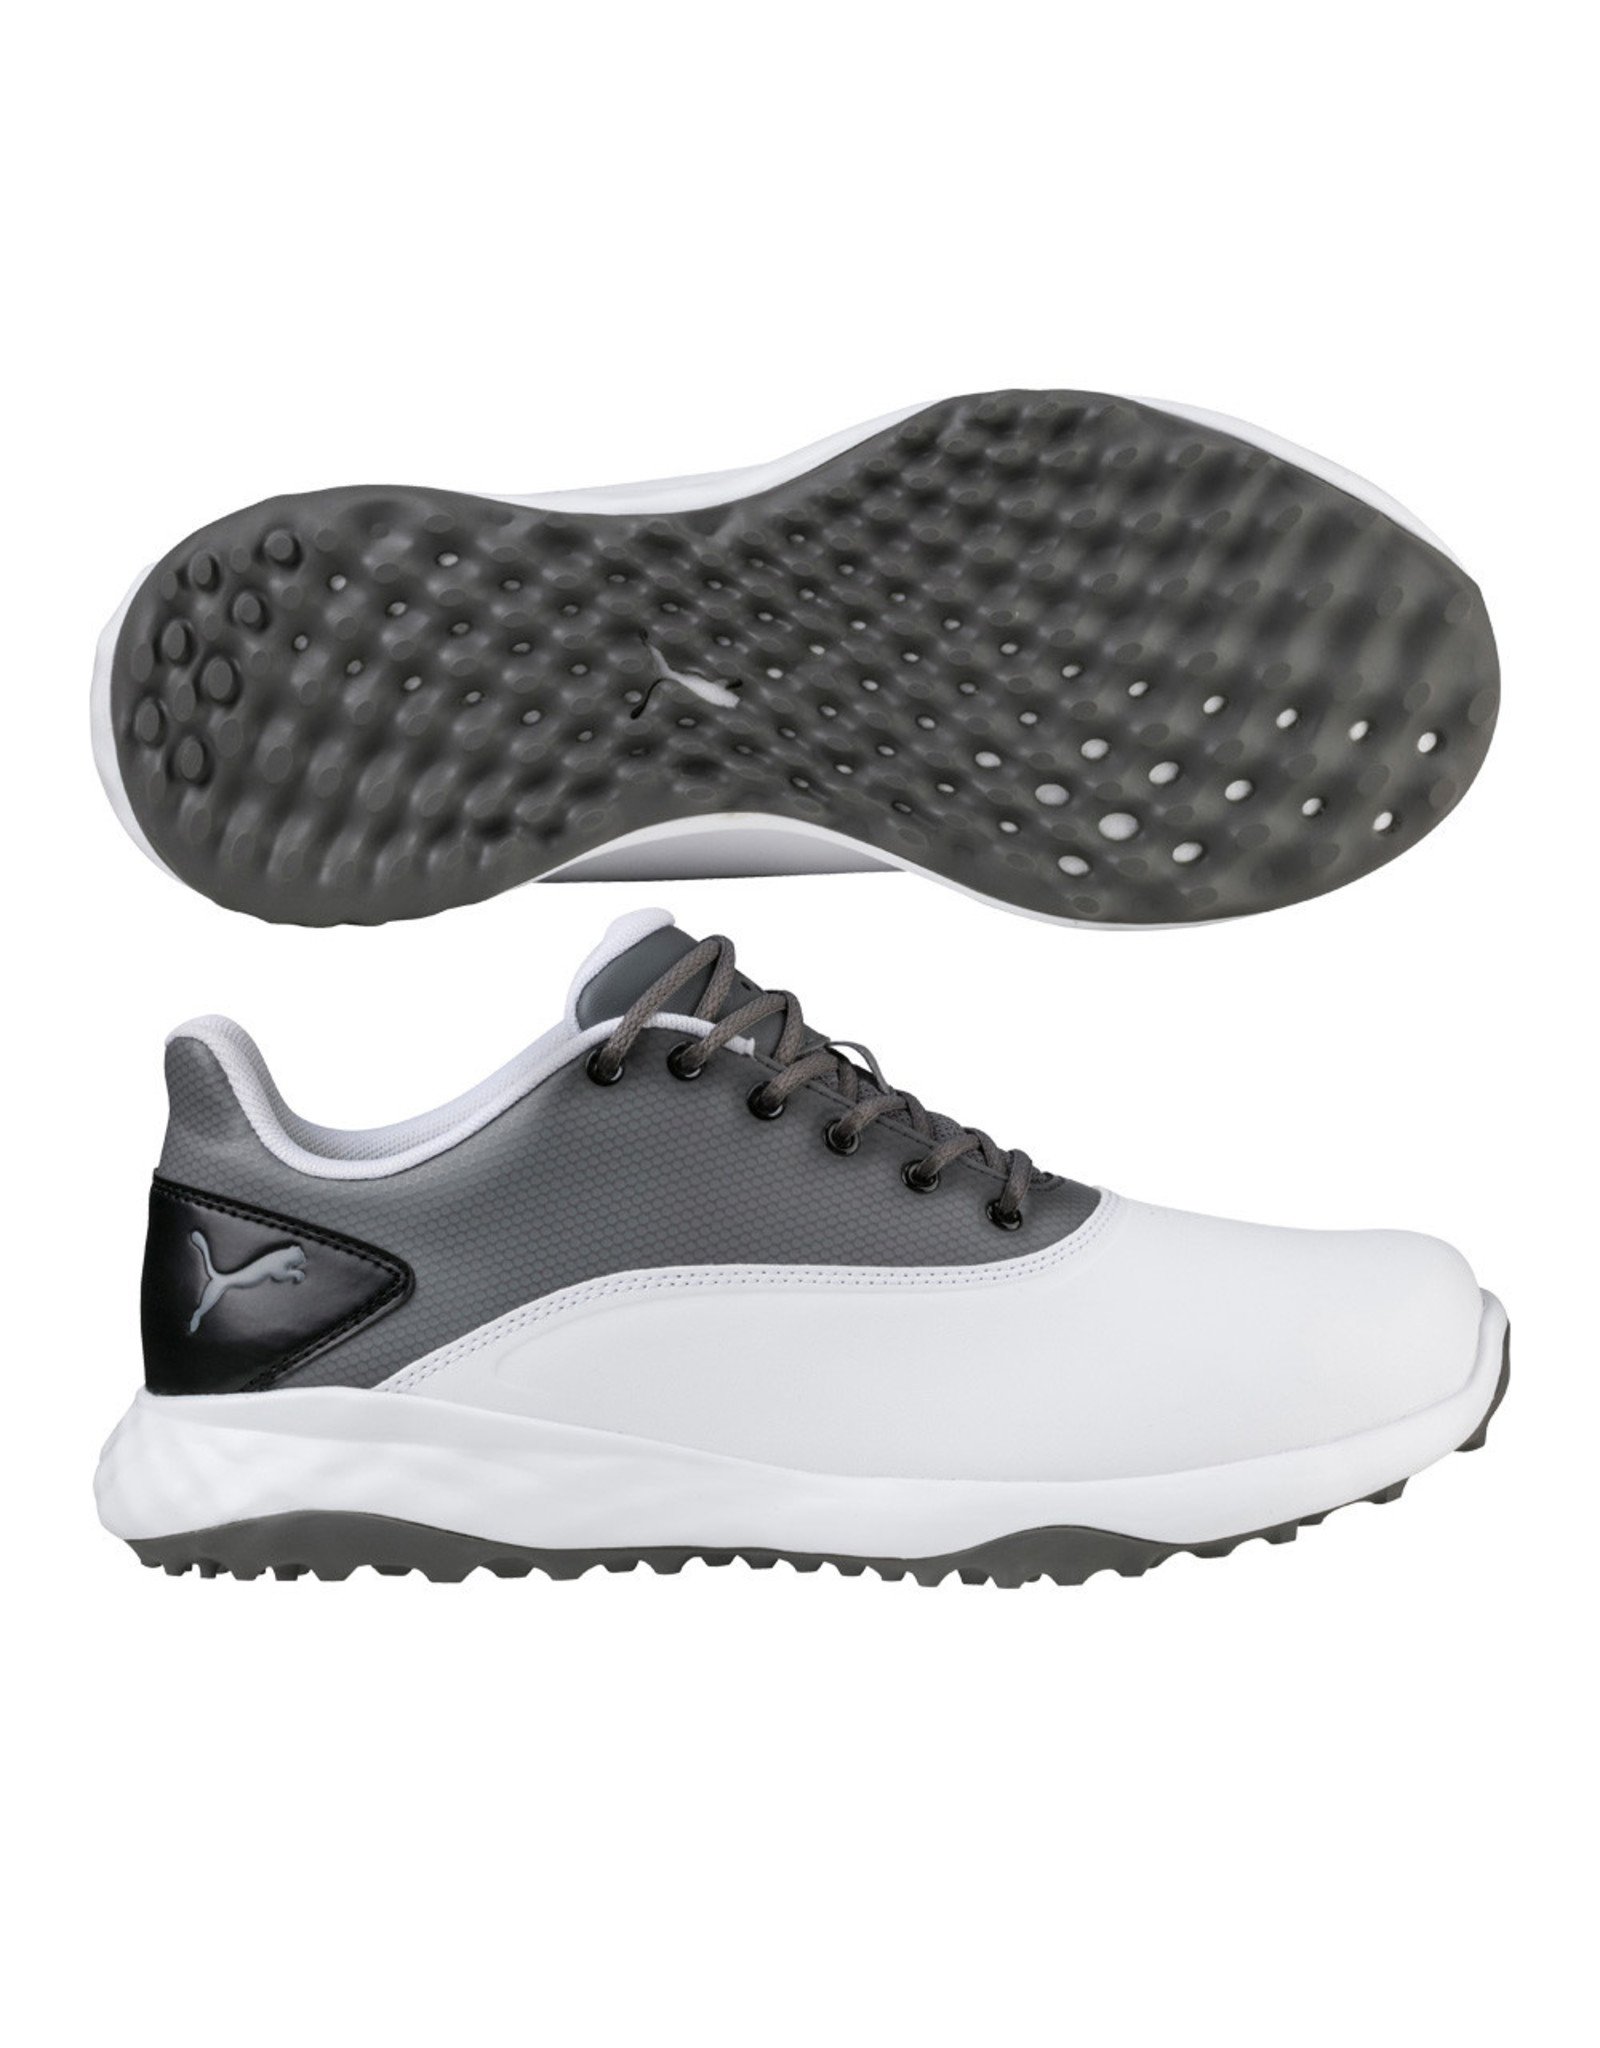 Puma Men's Grip Fusion Golf Shoes 